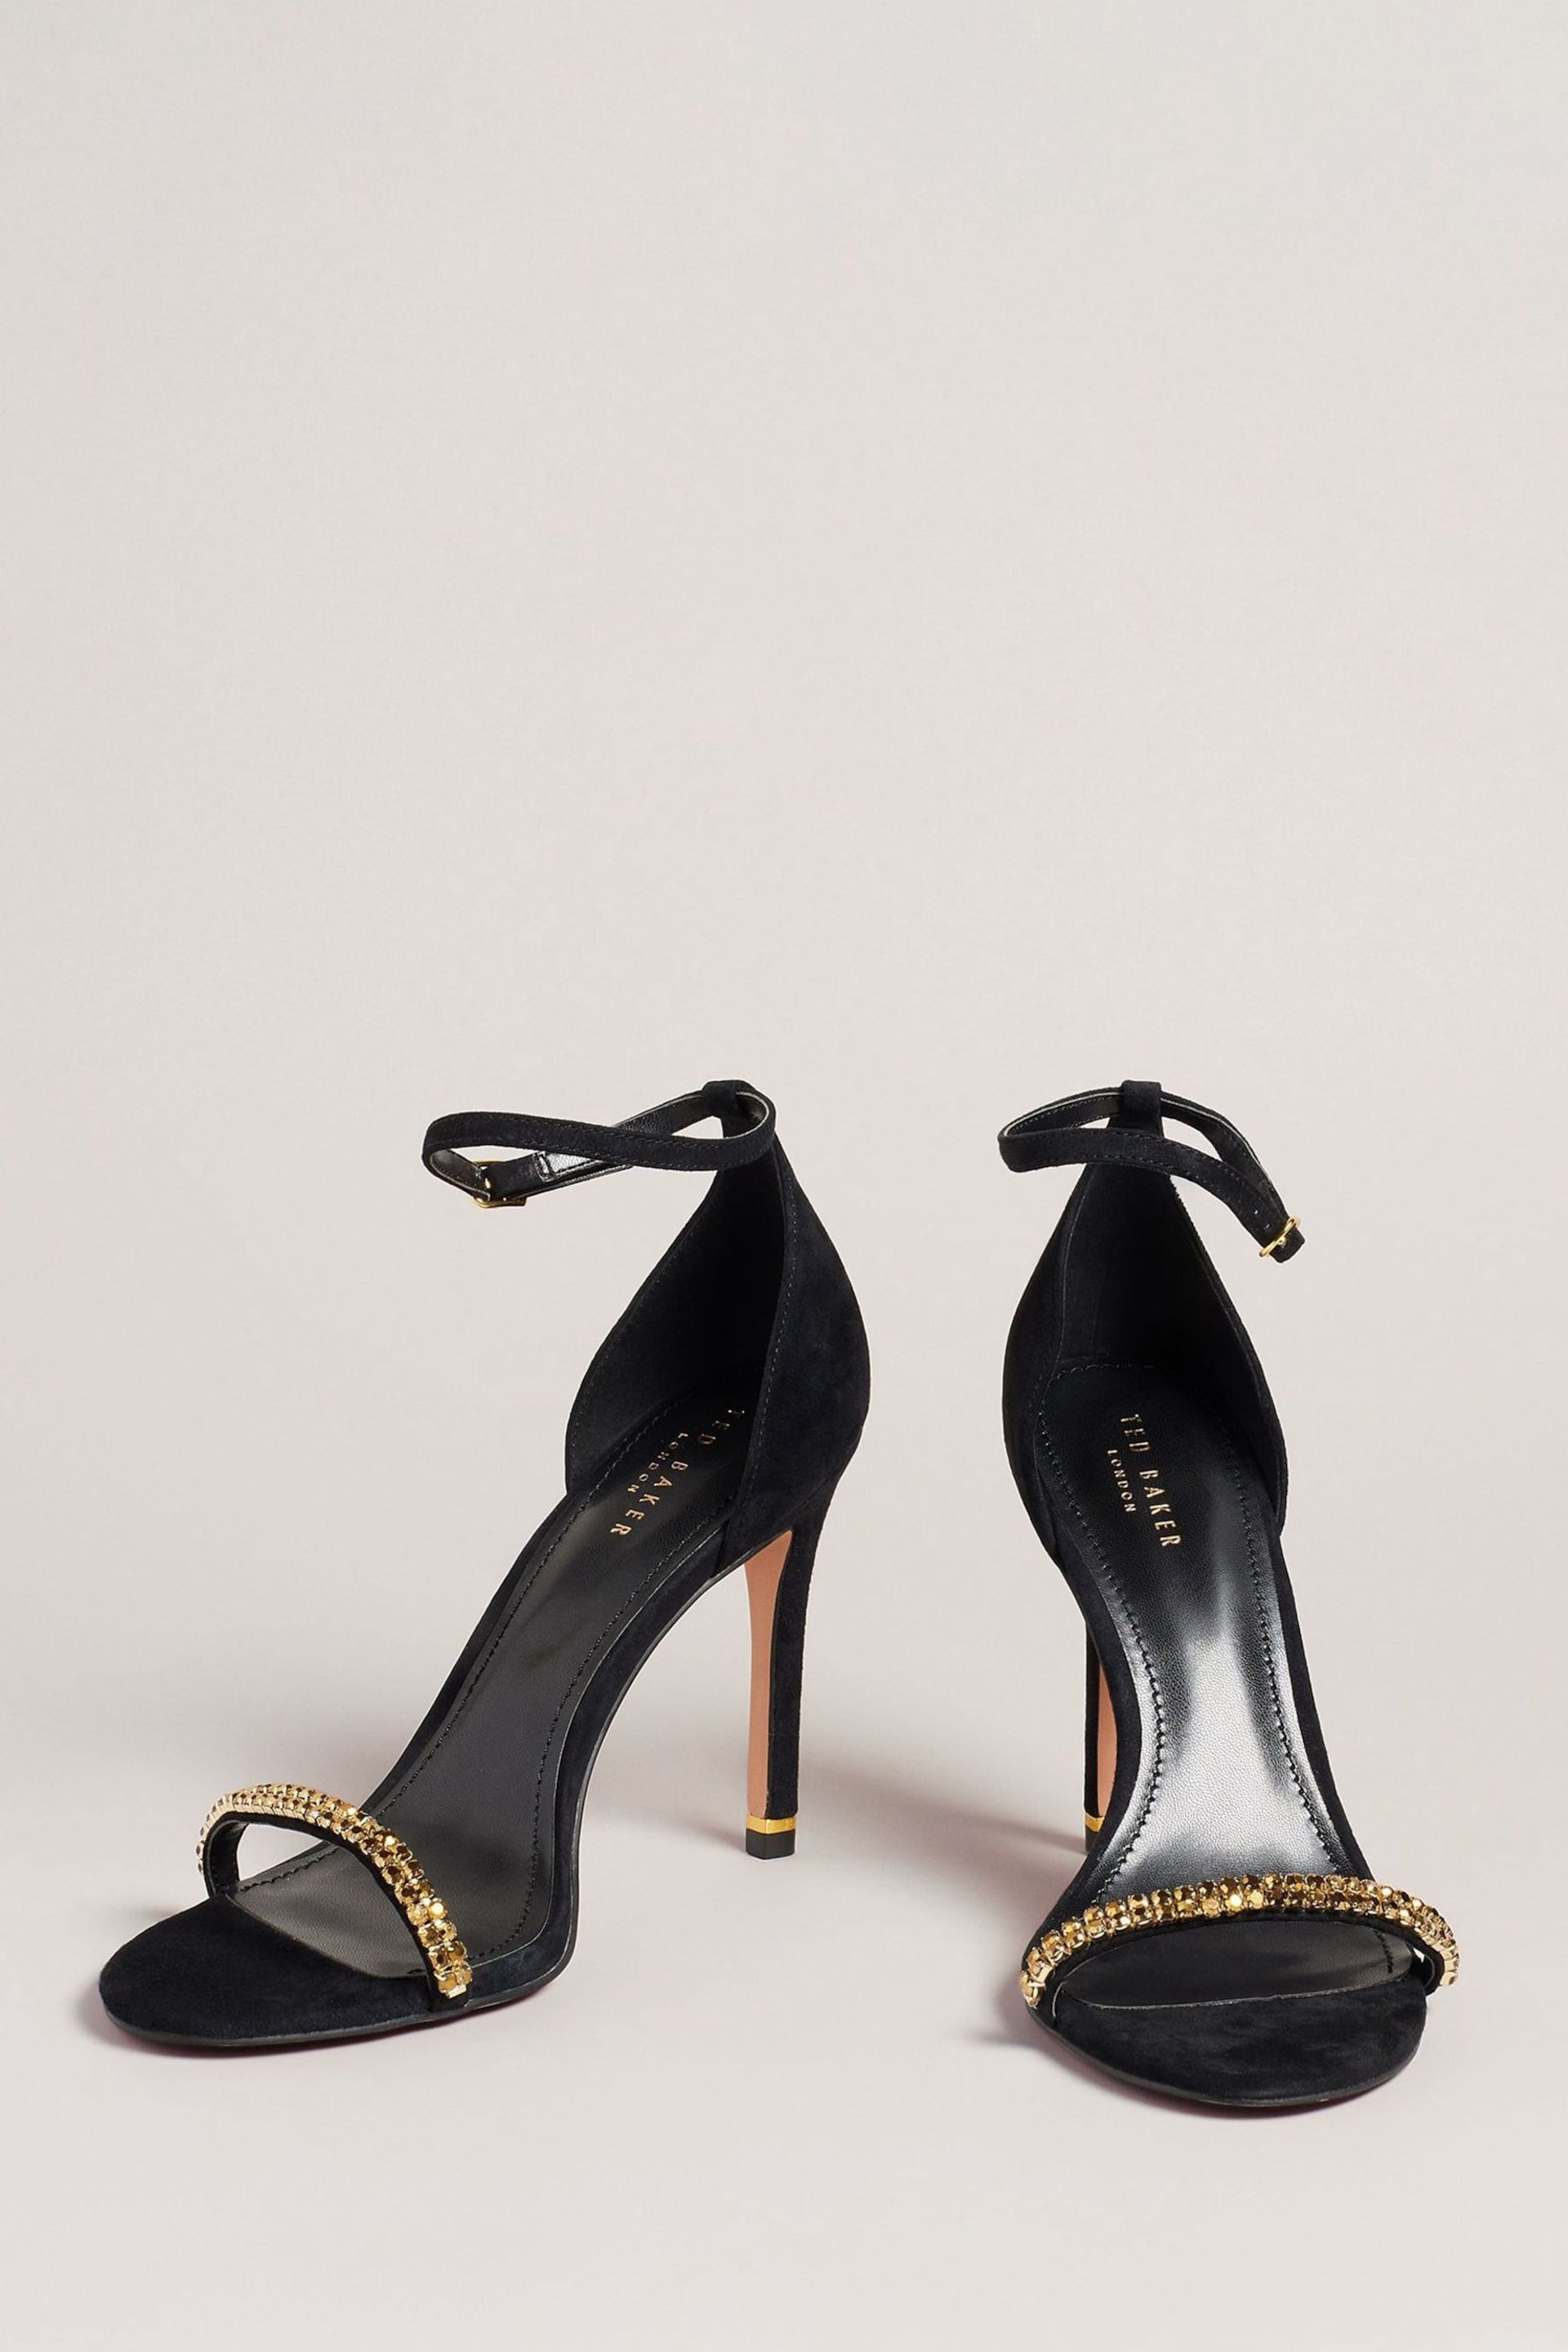 Ted Baker Gold/Black Helenni Crystal Strap Heeled Sandals - Image 2 of 5